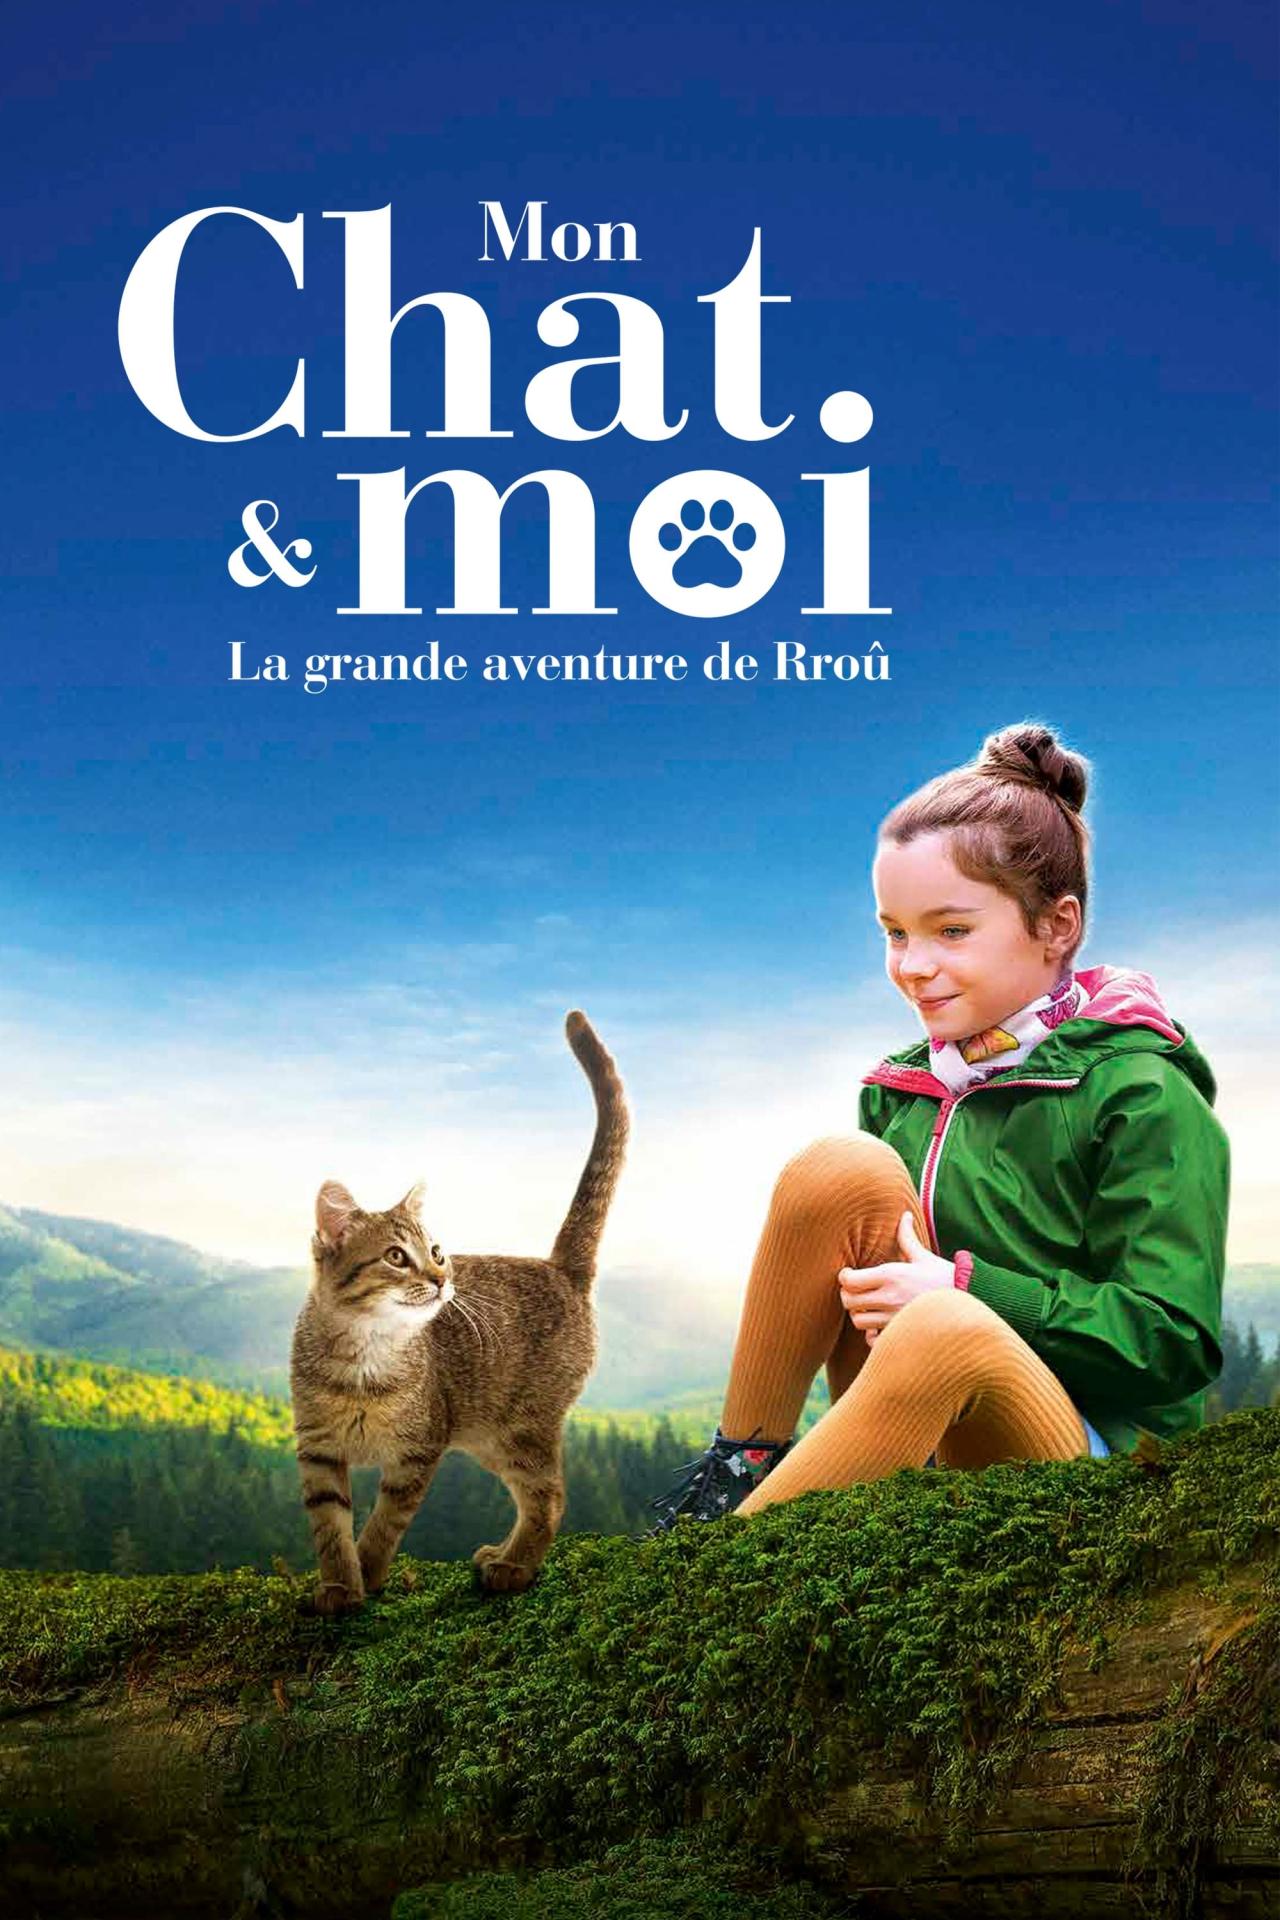 Mon chat et moi, la grande aventure de Rroû est-il disponible sur Netflix ou autre ?